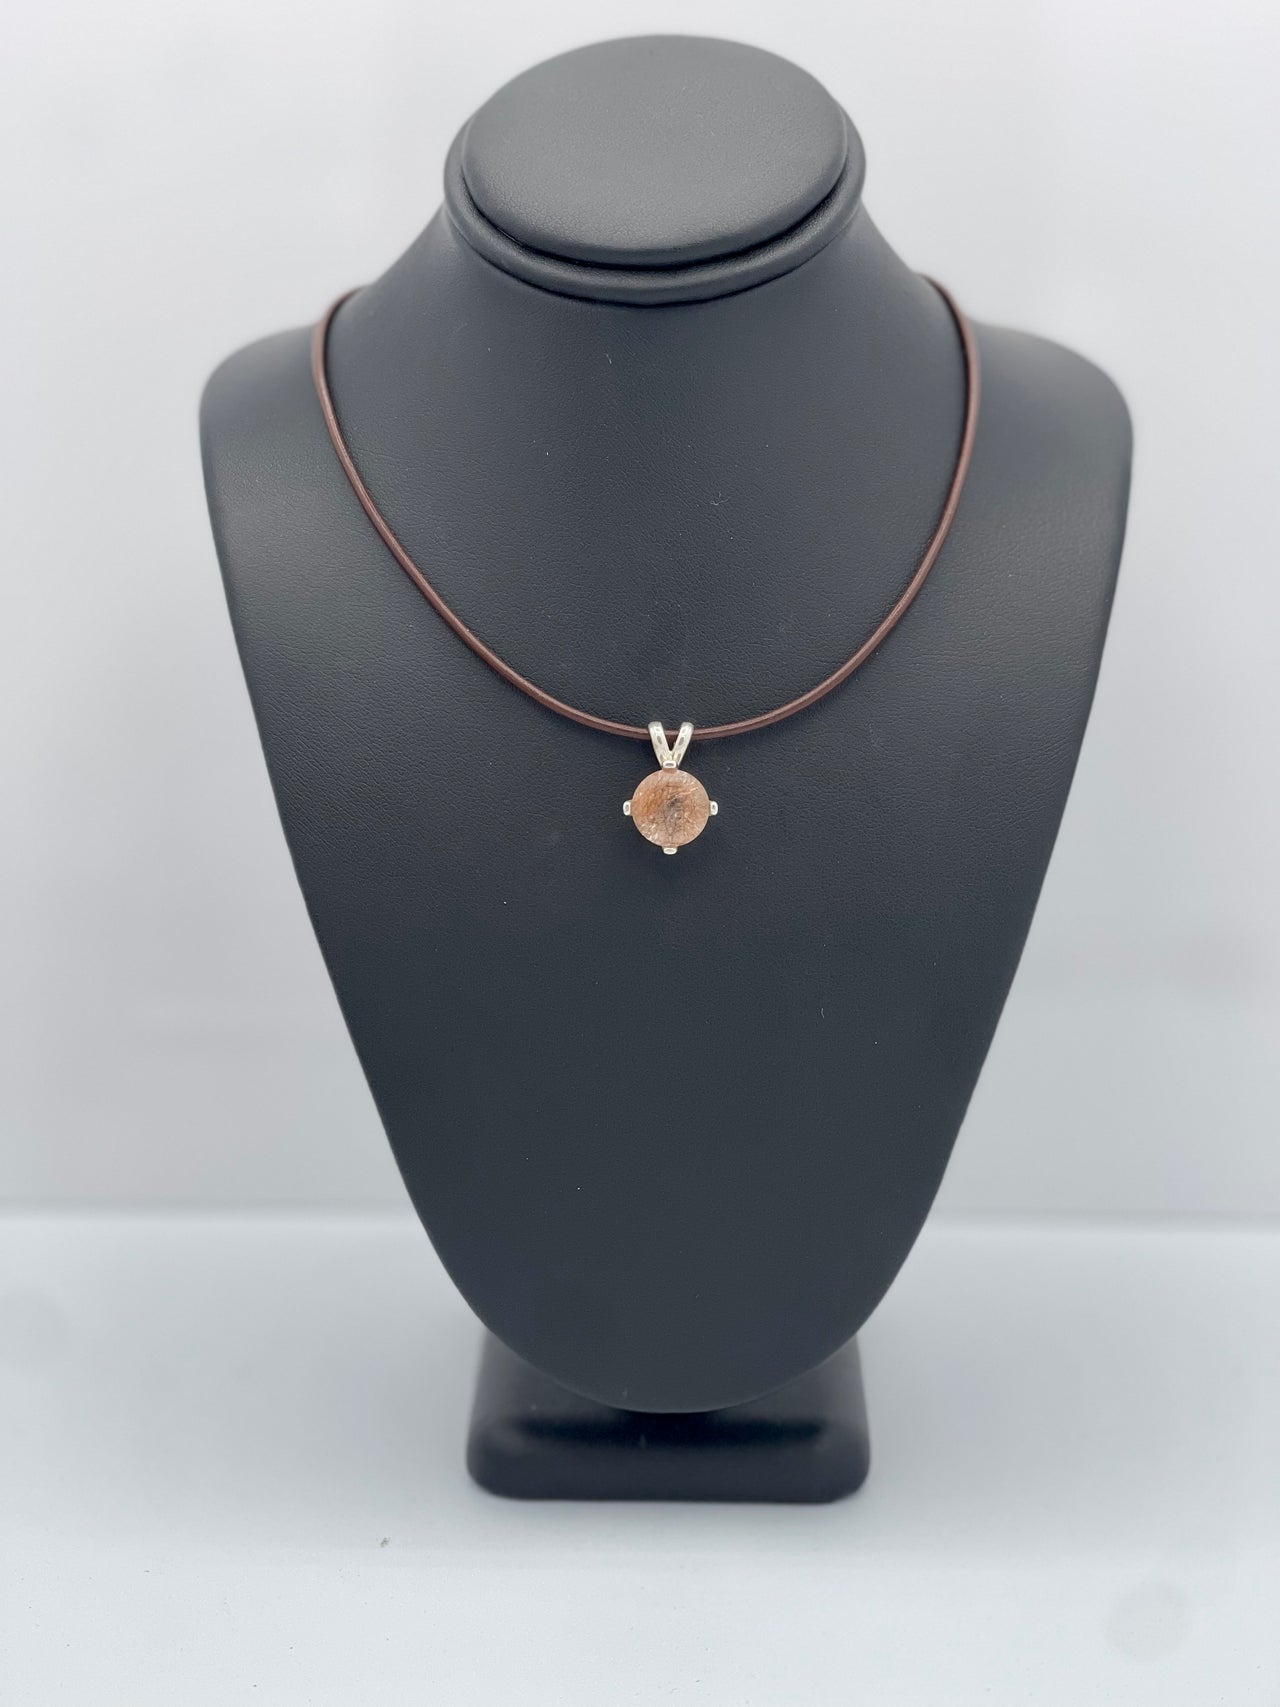 Copper Rutile Quartz Pendant Necklace